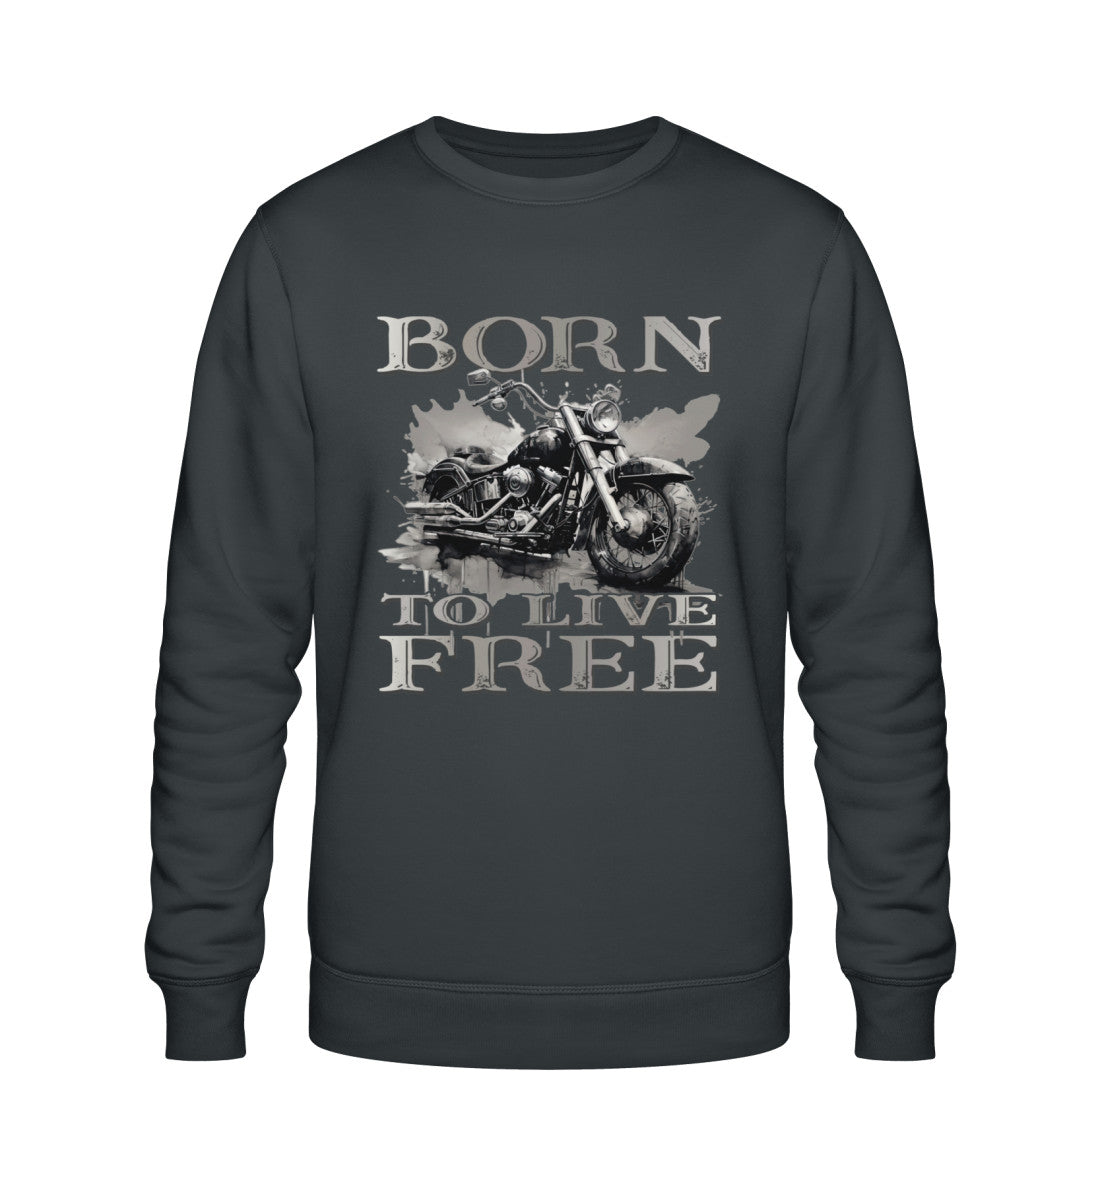 Ein Biker Sweatshirt für Motorradfahrer von Wingbikers mit dem Aufdruck,  Born to Live Free, in dunkelgrau.  